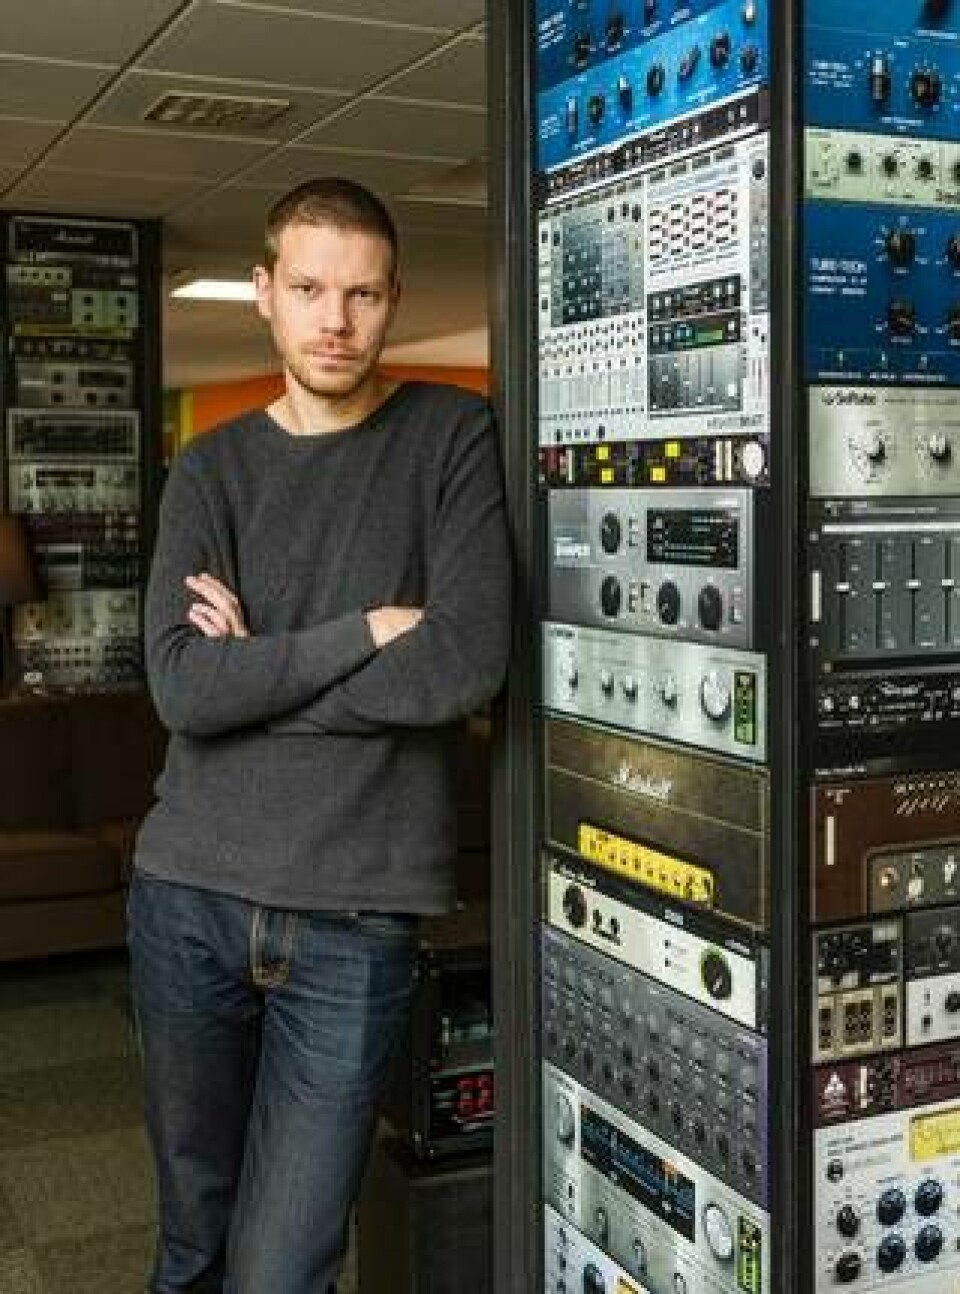 Arvid Rosén är utvecklingschef på Softube som gör digitala ljudlösningar. Det handlar om signalbehandling och arbete som han menar kan vara ”extremt mattetungt”. Foto: Per-Olof Rosén